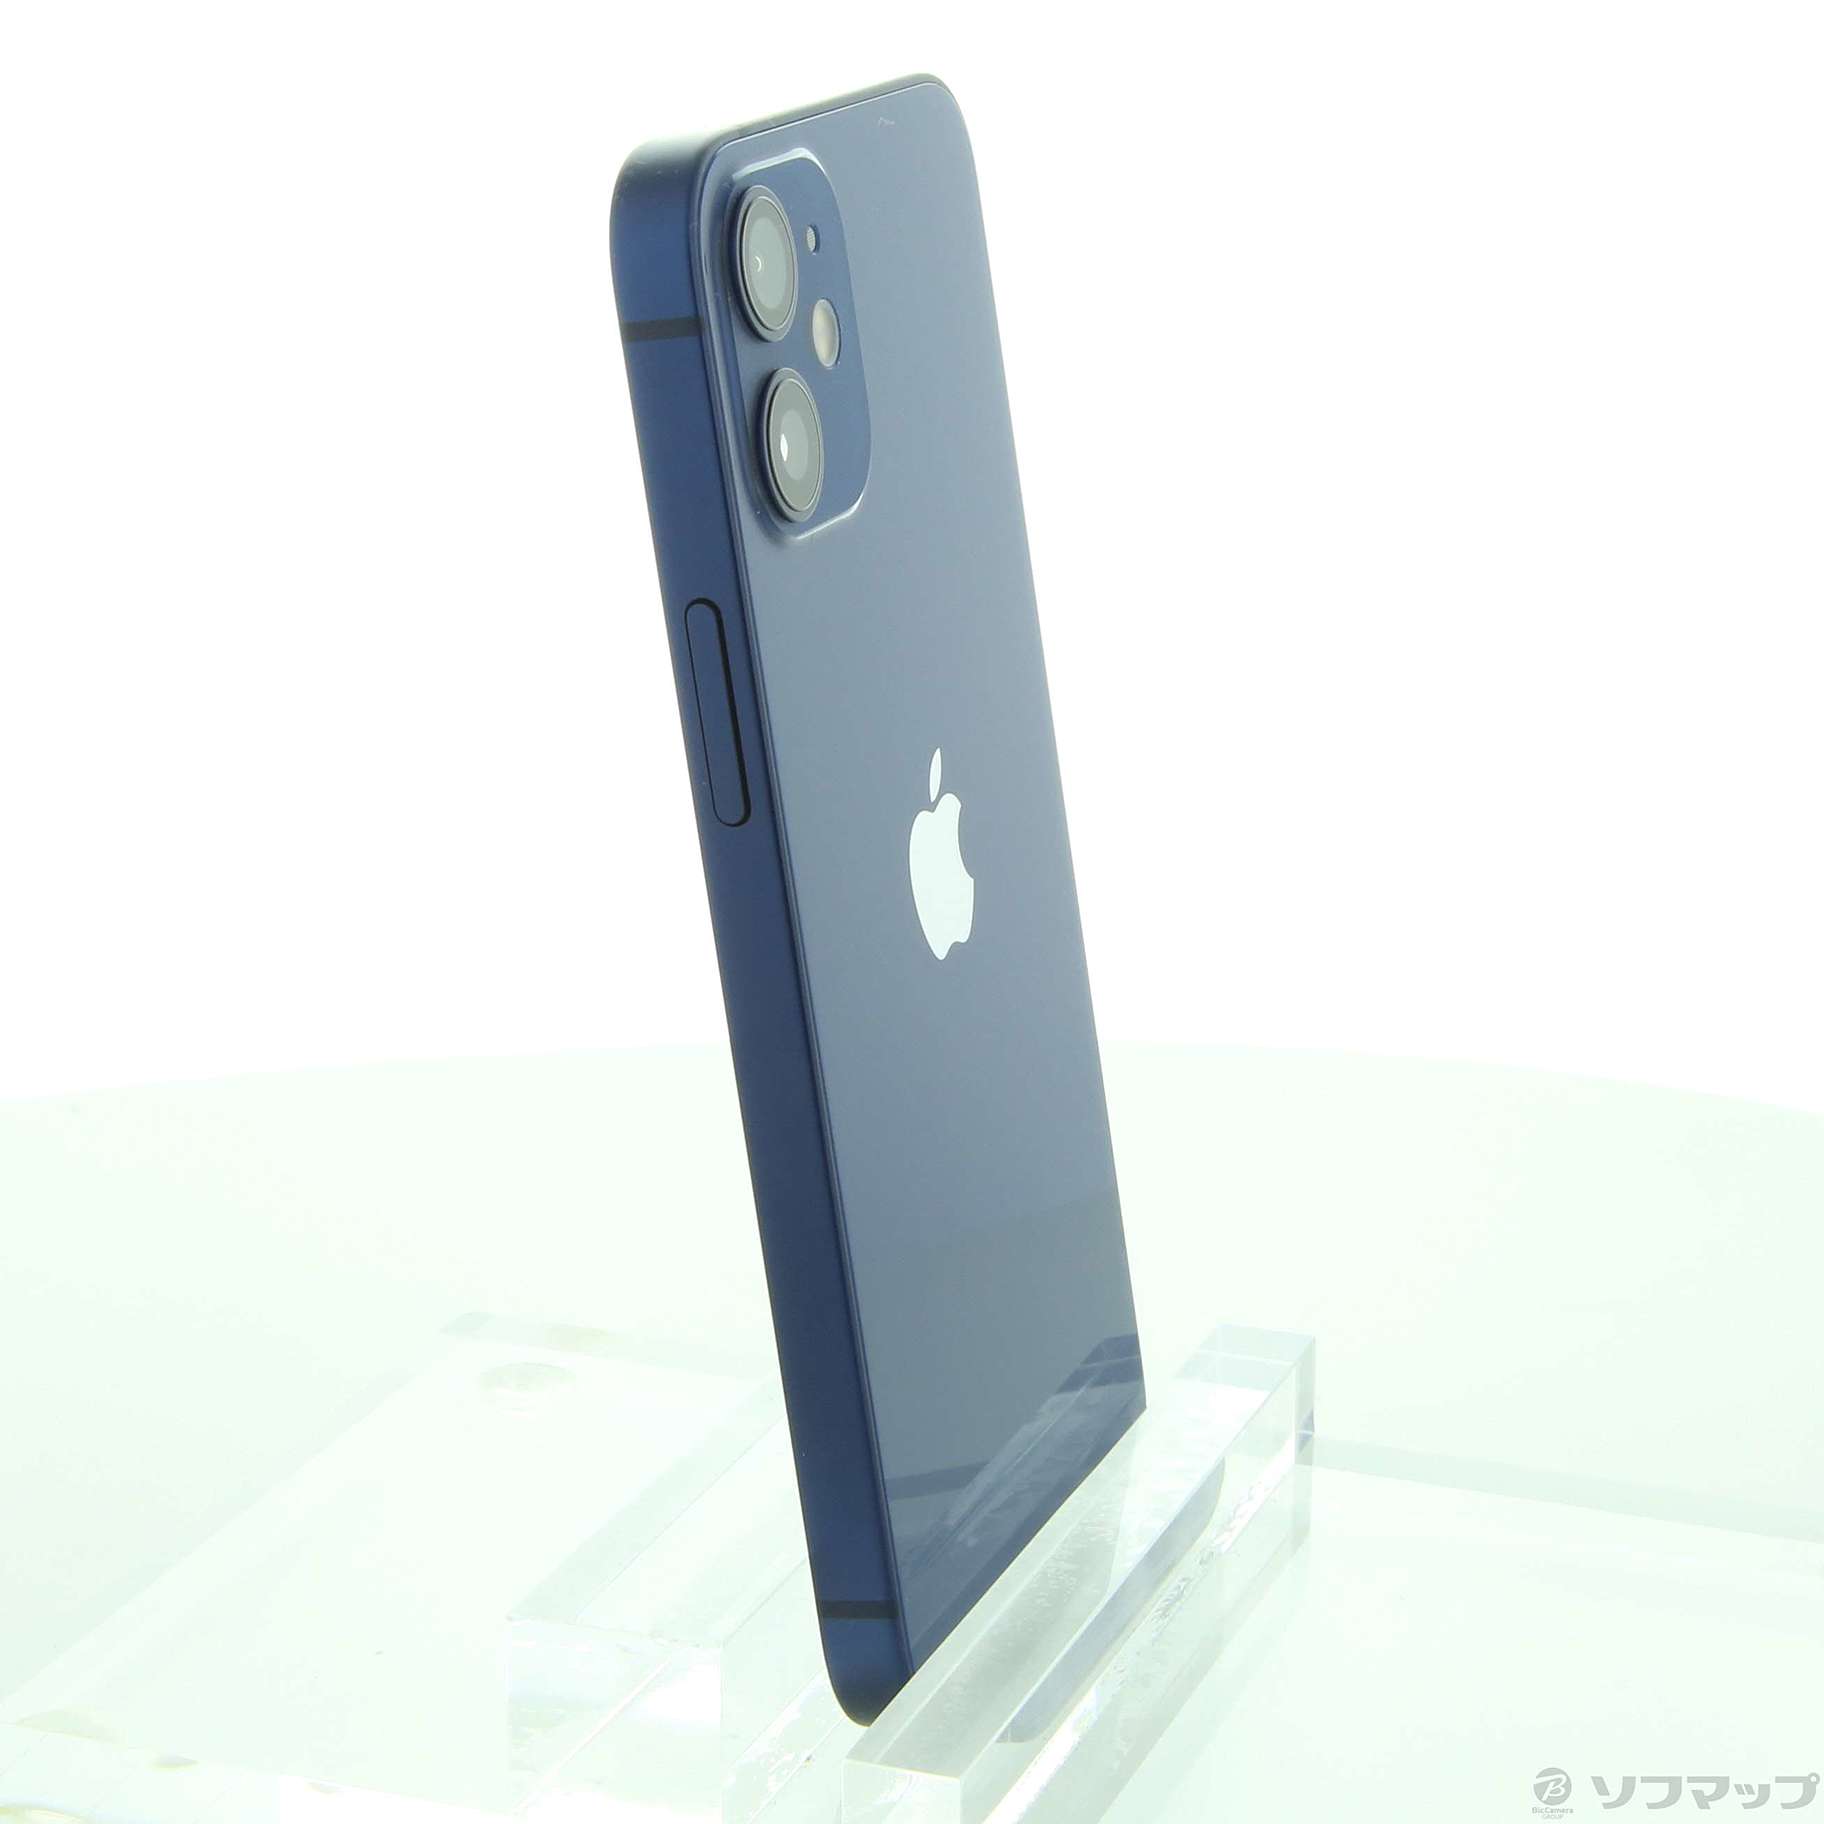 プレリリース版の-Apple(アップル) iPhone12 mini 128GB ブルー MGDP3J